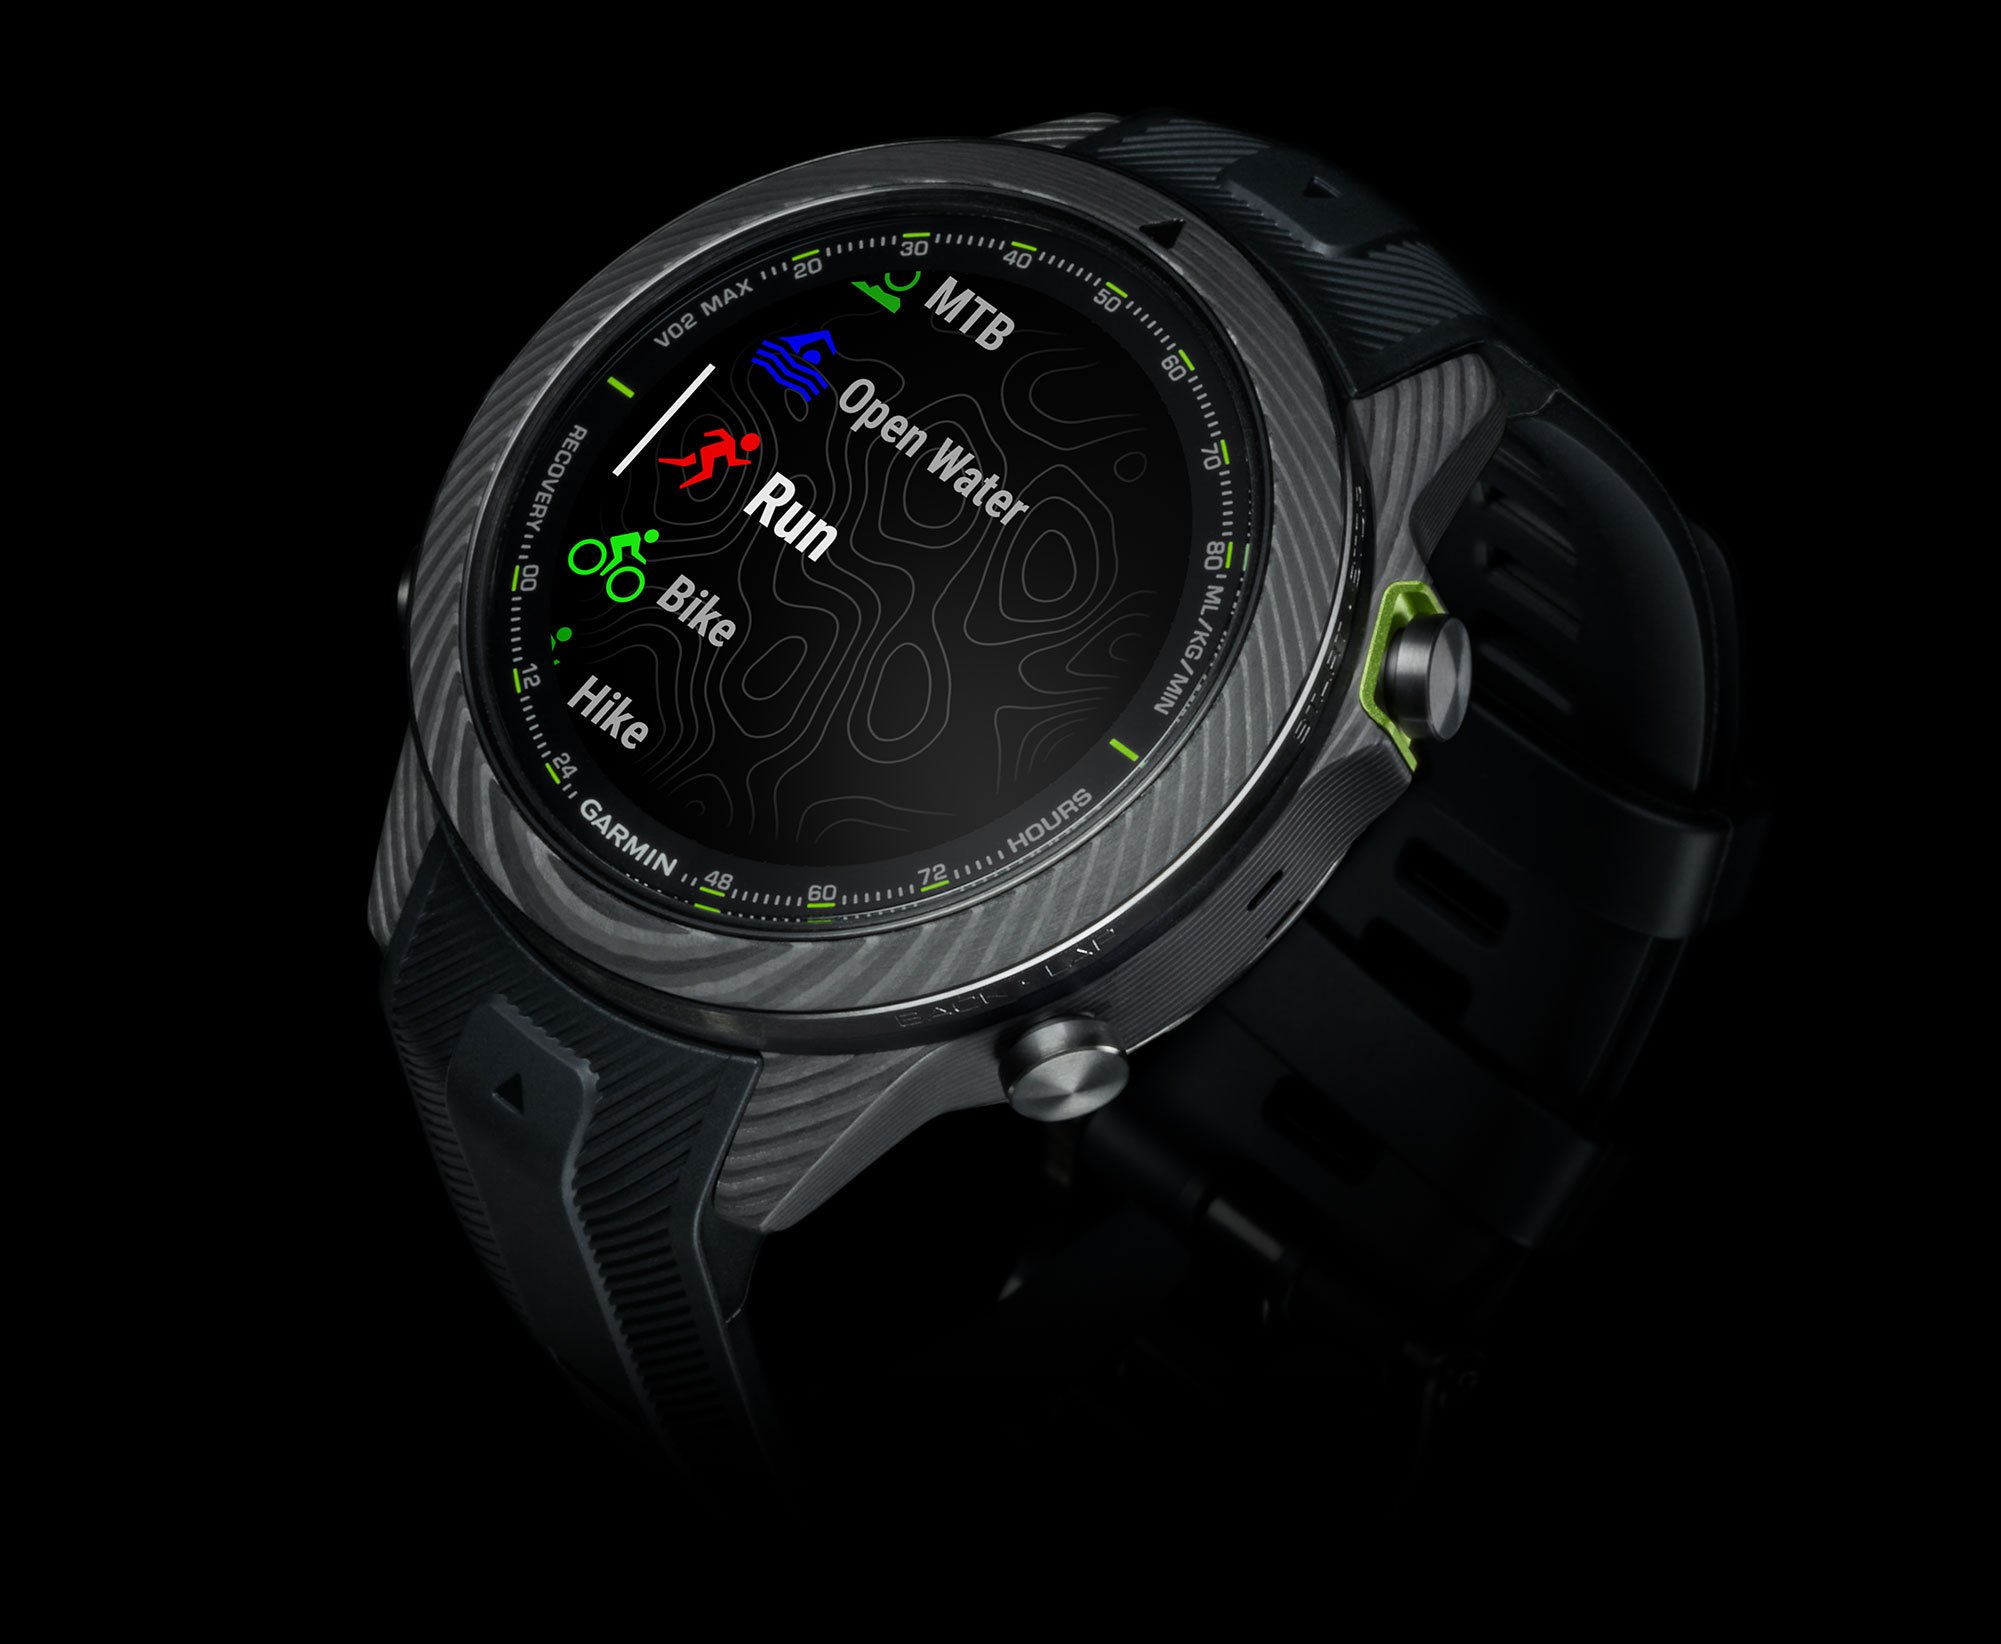 MARQ : la nouvelle gamme de montres connectées de chez Garmin